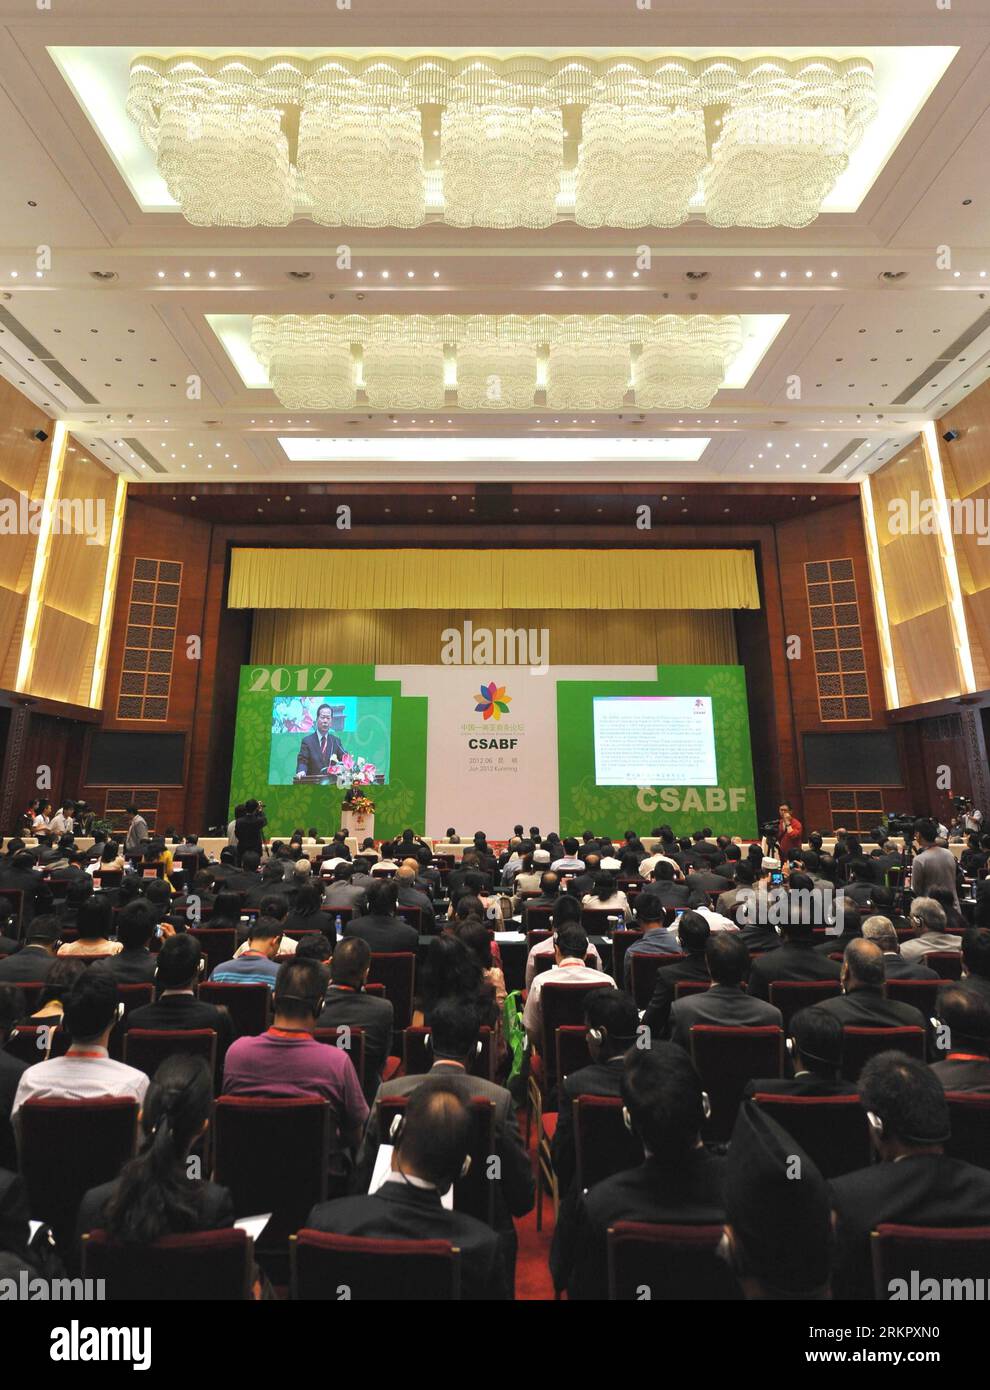 Bildnummer: 58072007 Datum: 05.06.2012 Copyright: imago/Xinhua (120605) -- KUNMING, 5. Juni 2012 (Xinhua) -- Delegierte nehmen an der Eröffnungszeremonie des China-Südasien Business Forums in Kunming, Hauptstadt der südwestchinesischen Provinz Yunnan, am 5. Juni 2012 Teil. Mehr als 300 Delegierte aus China und südasiatischen Ländern nahmen an dem dreitägigen Forum Teil, das am Dienstag hier ihren Anfang nahm. (Xinhua/Lin Yiguang) (ry) CHINA-KUNMING-SOUTH ASIA-BUSINESS FORUM (CN) PUBLICATIONxNOTxINxCHN Wirtschaft Wirtschaftsforum Südasien Premiere xbs x0x 2012 hoch 58072007 Datum 05 06 2012 Copyright Imago XINHUA Kunmi Stockfoto